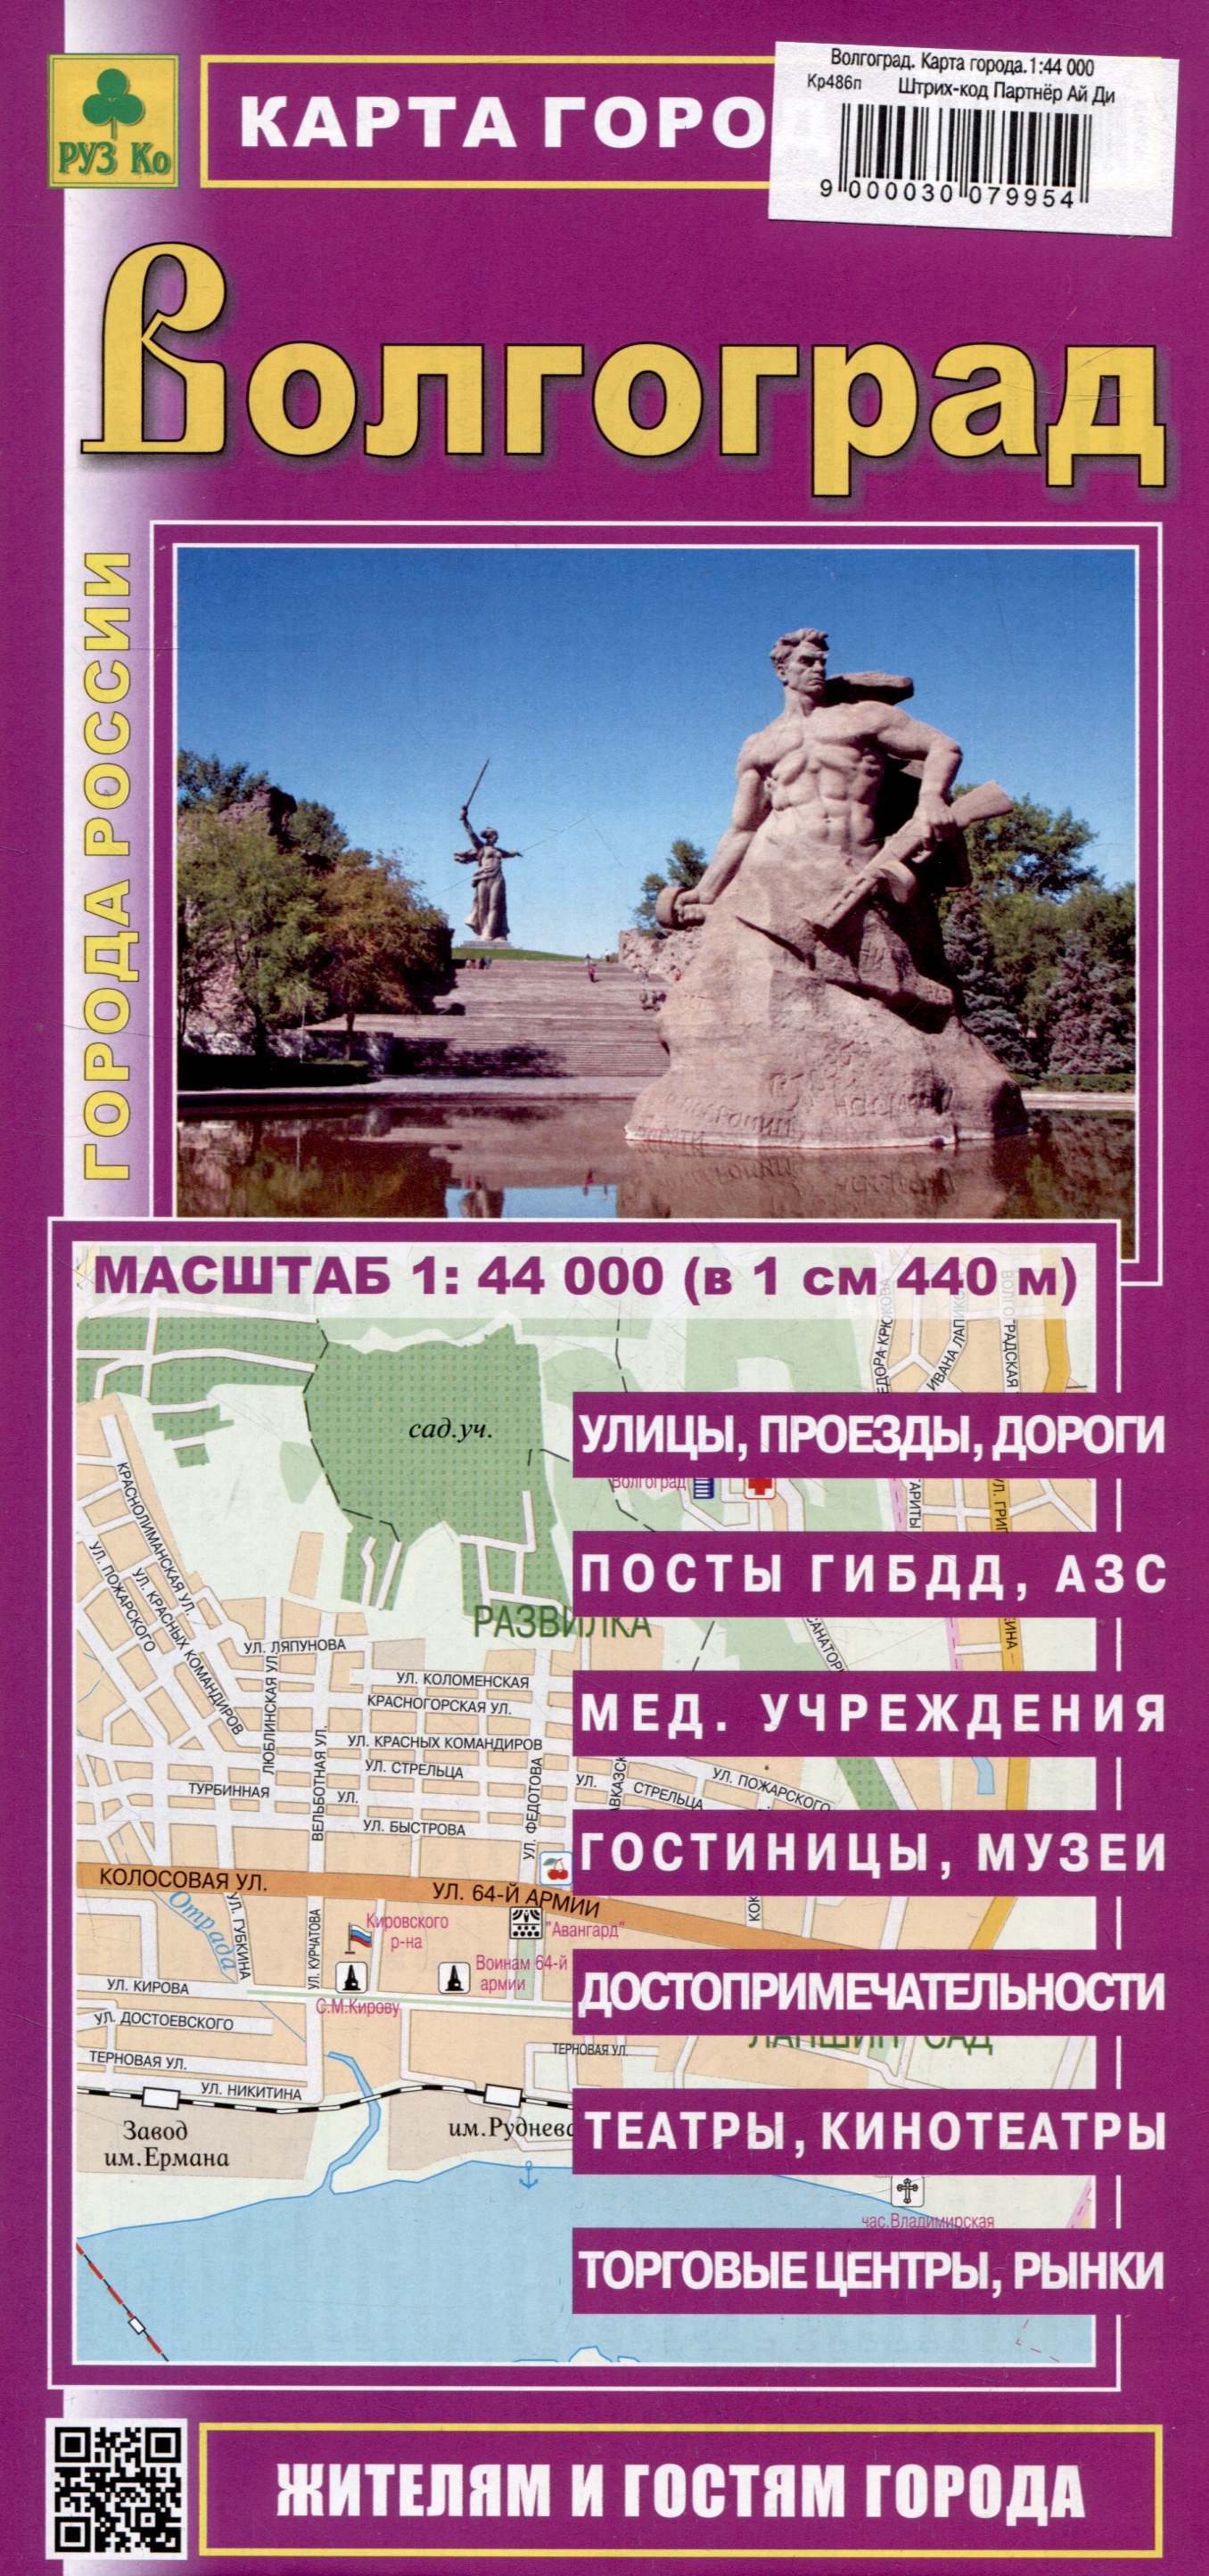 Волгоград. Карта города (М1:44 000) казань карта города м1 35 000